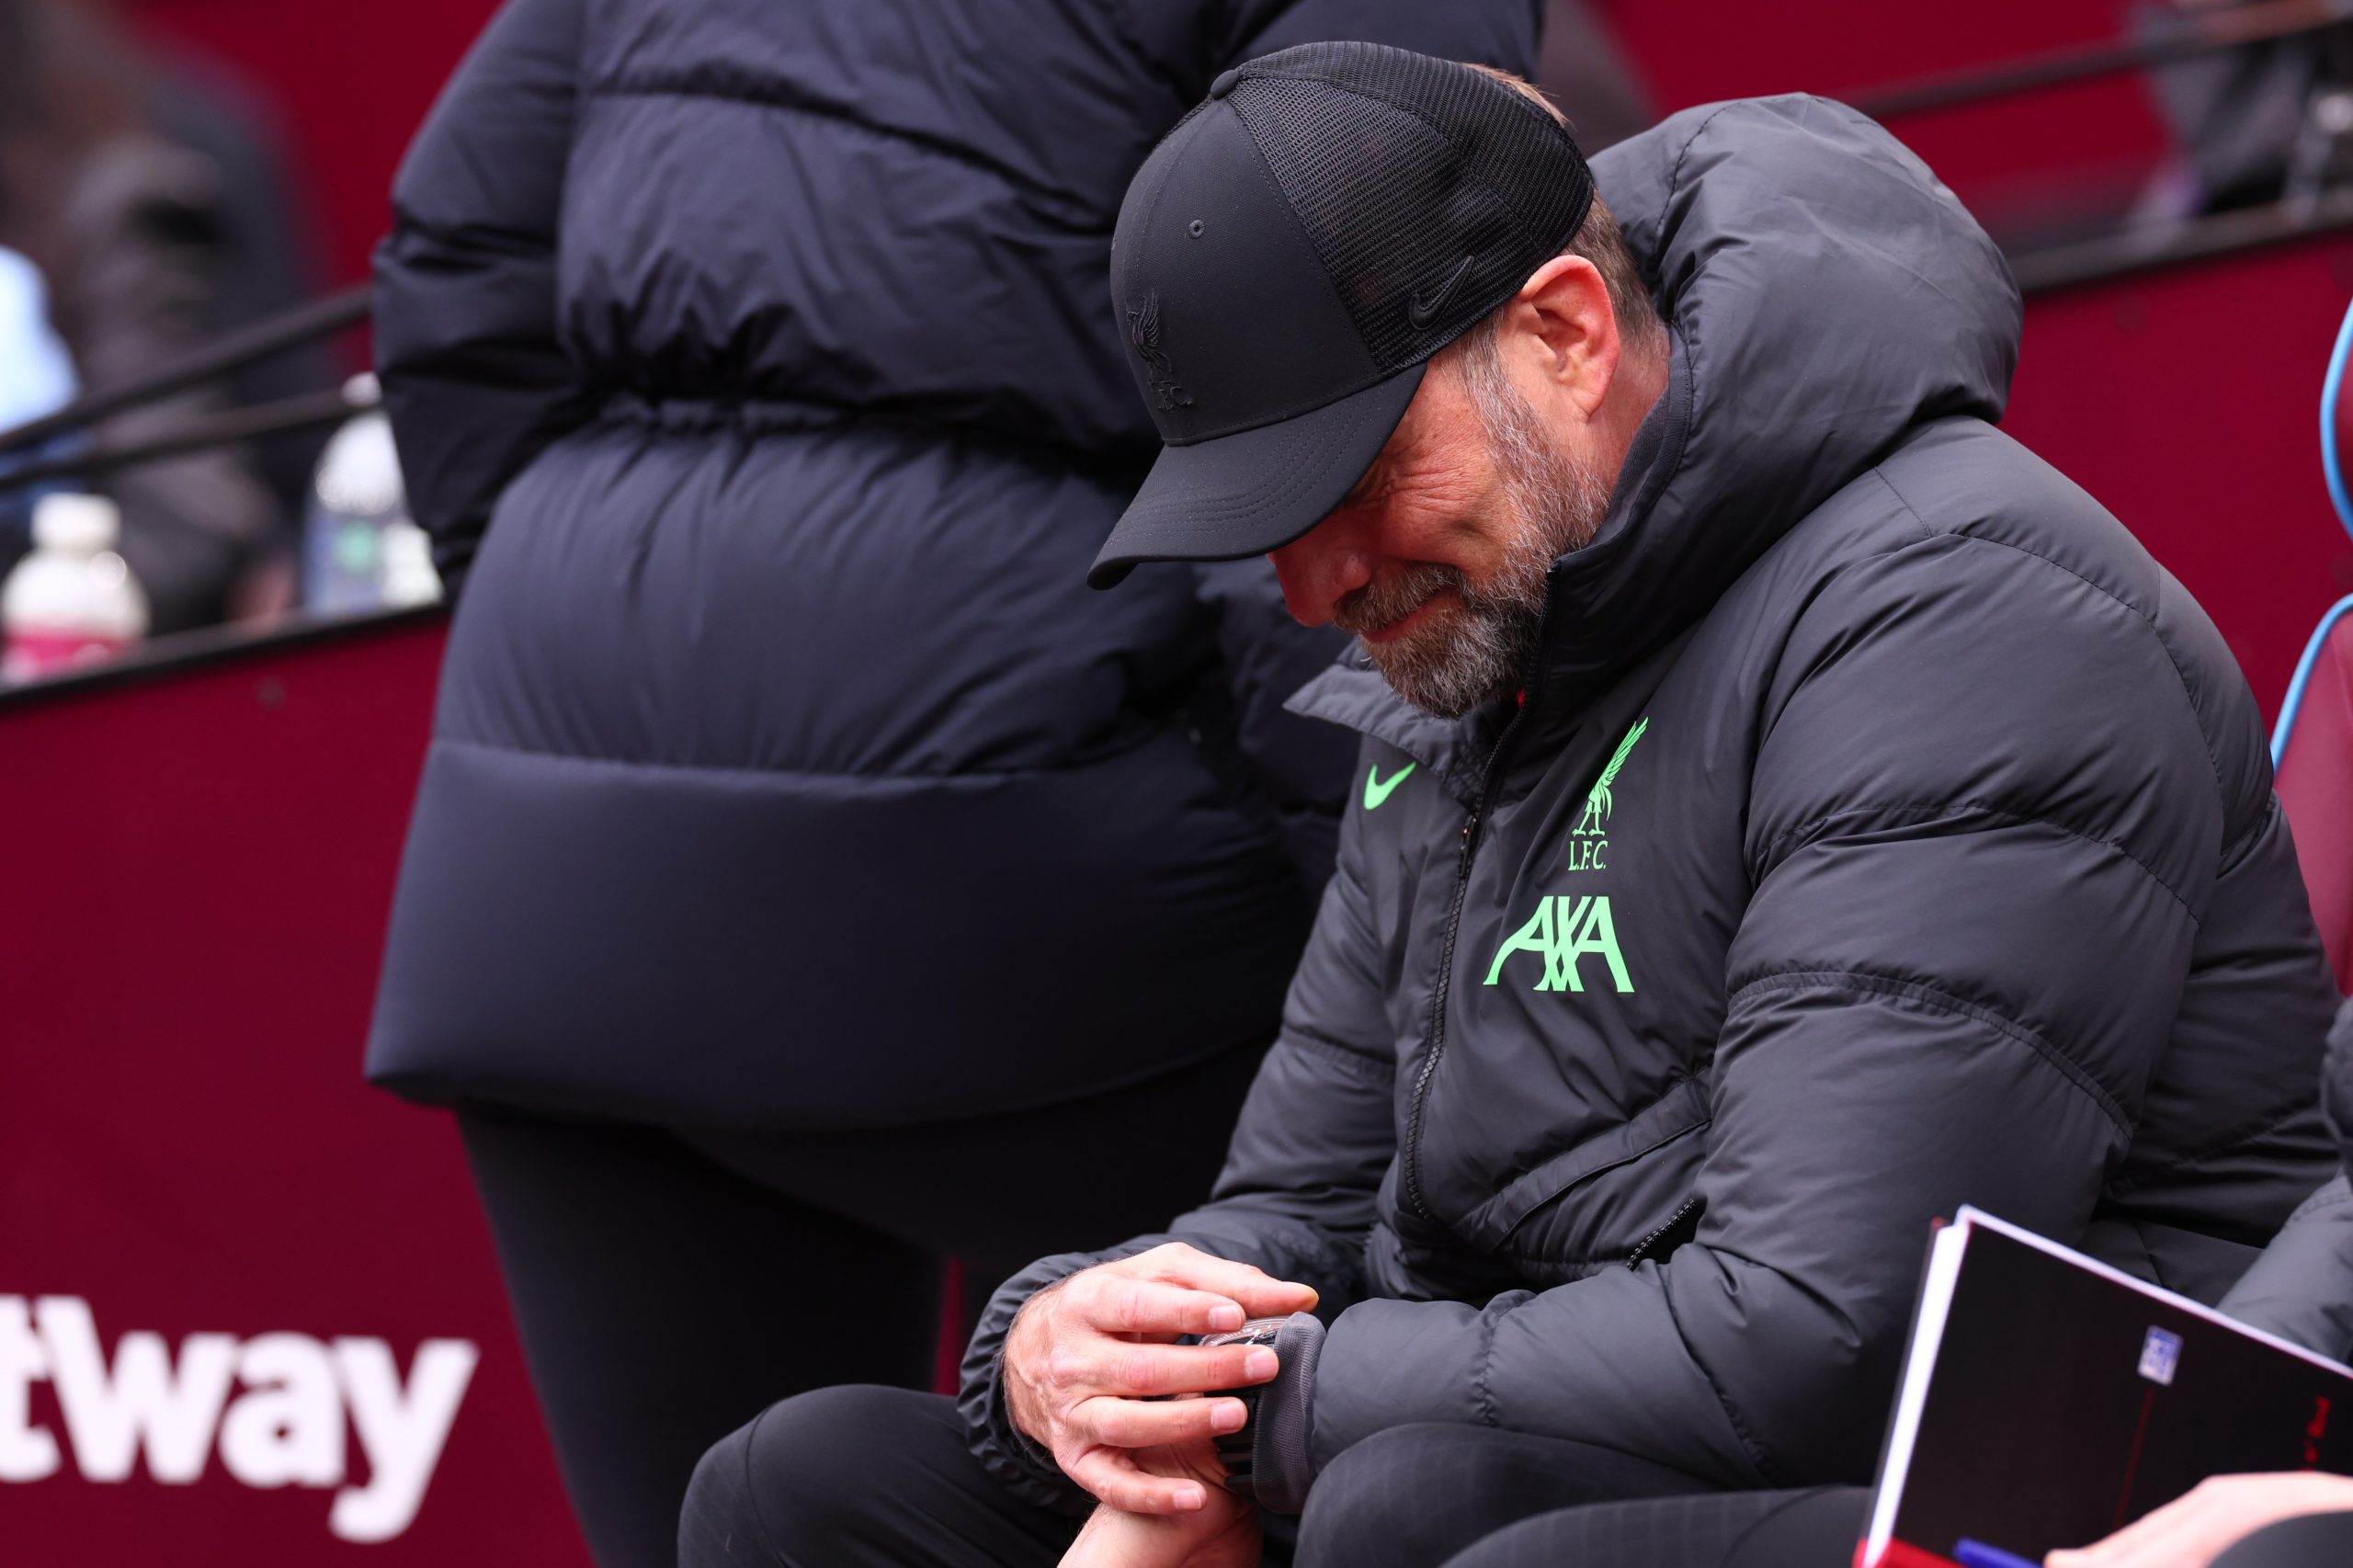 El tiempo se está agotando para Klopp, quien ha visto cómo la forma del Liverpool ha disminuido en las últimas semanas